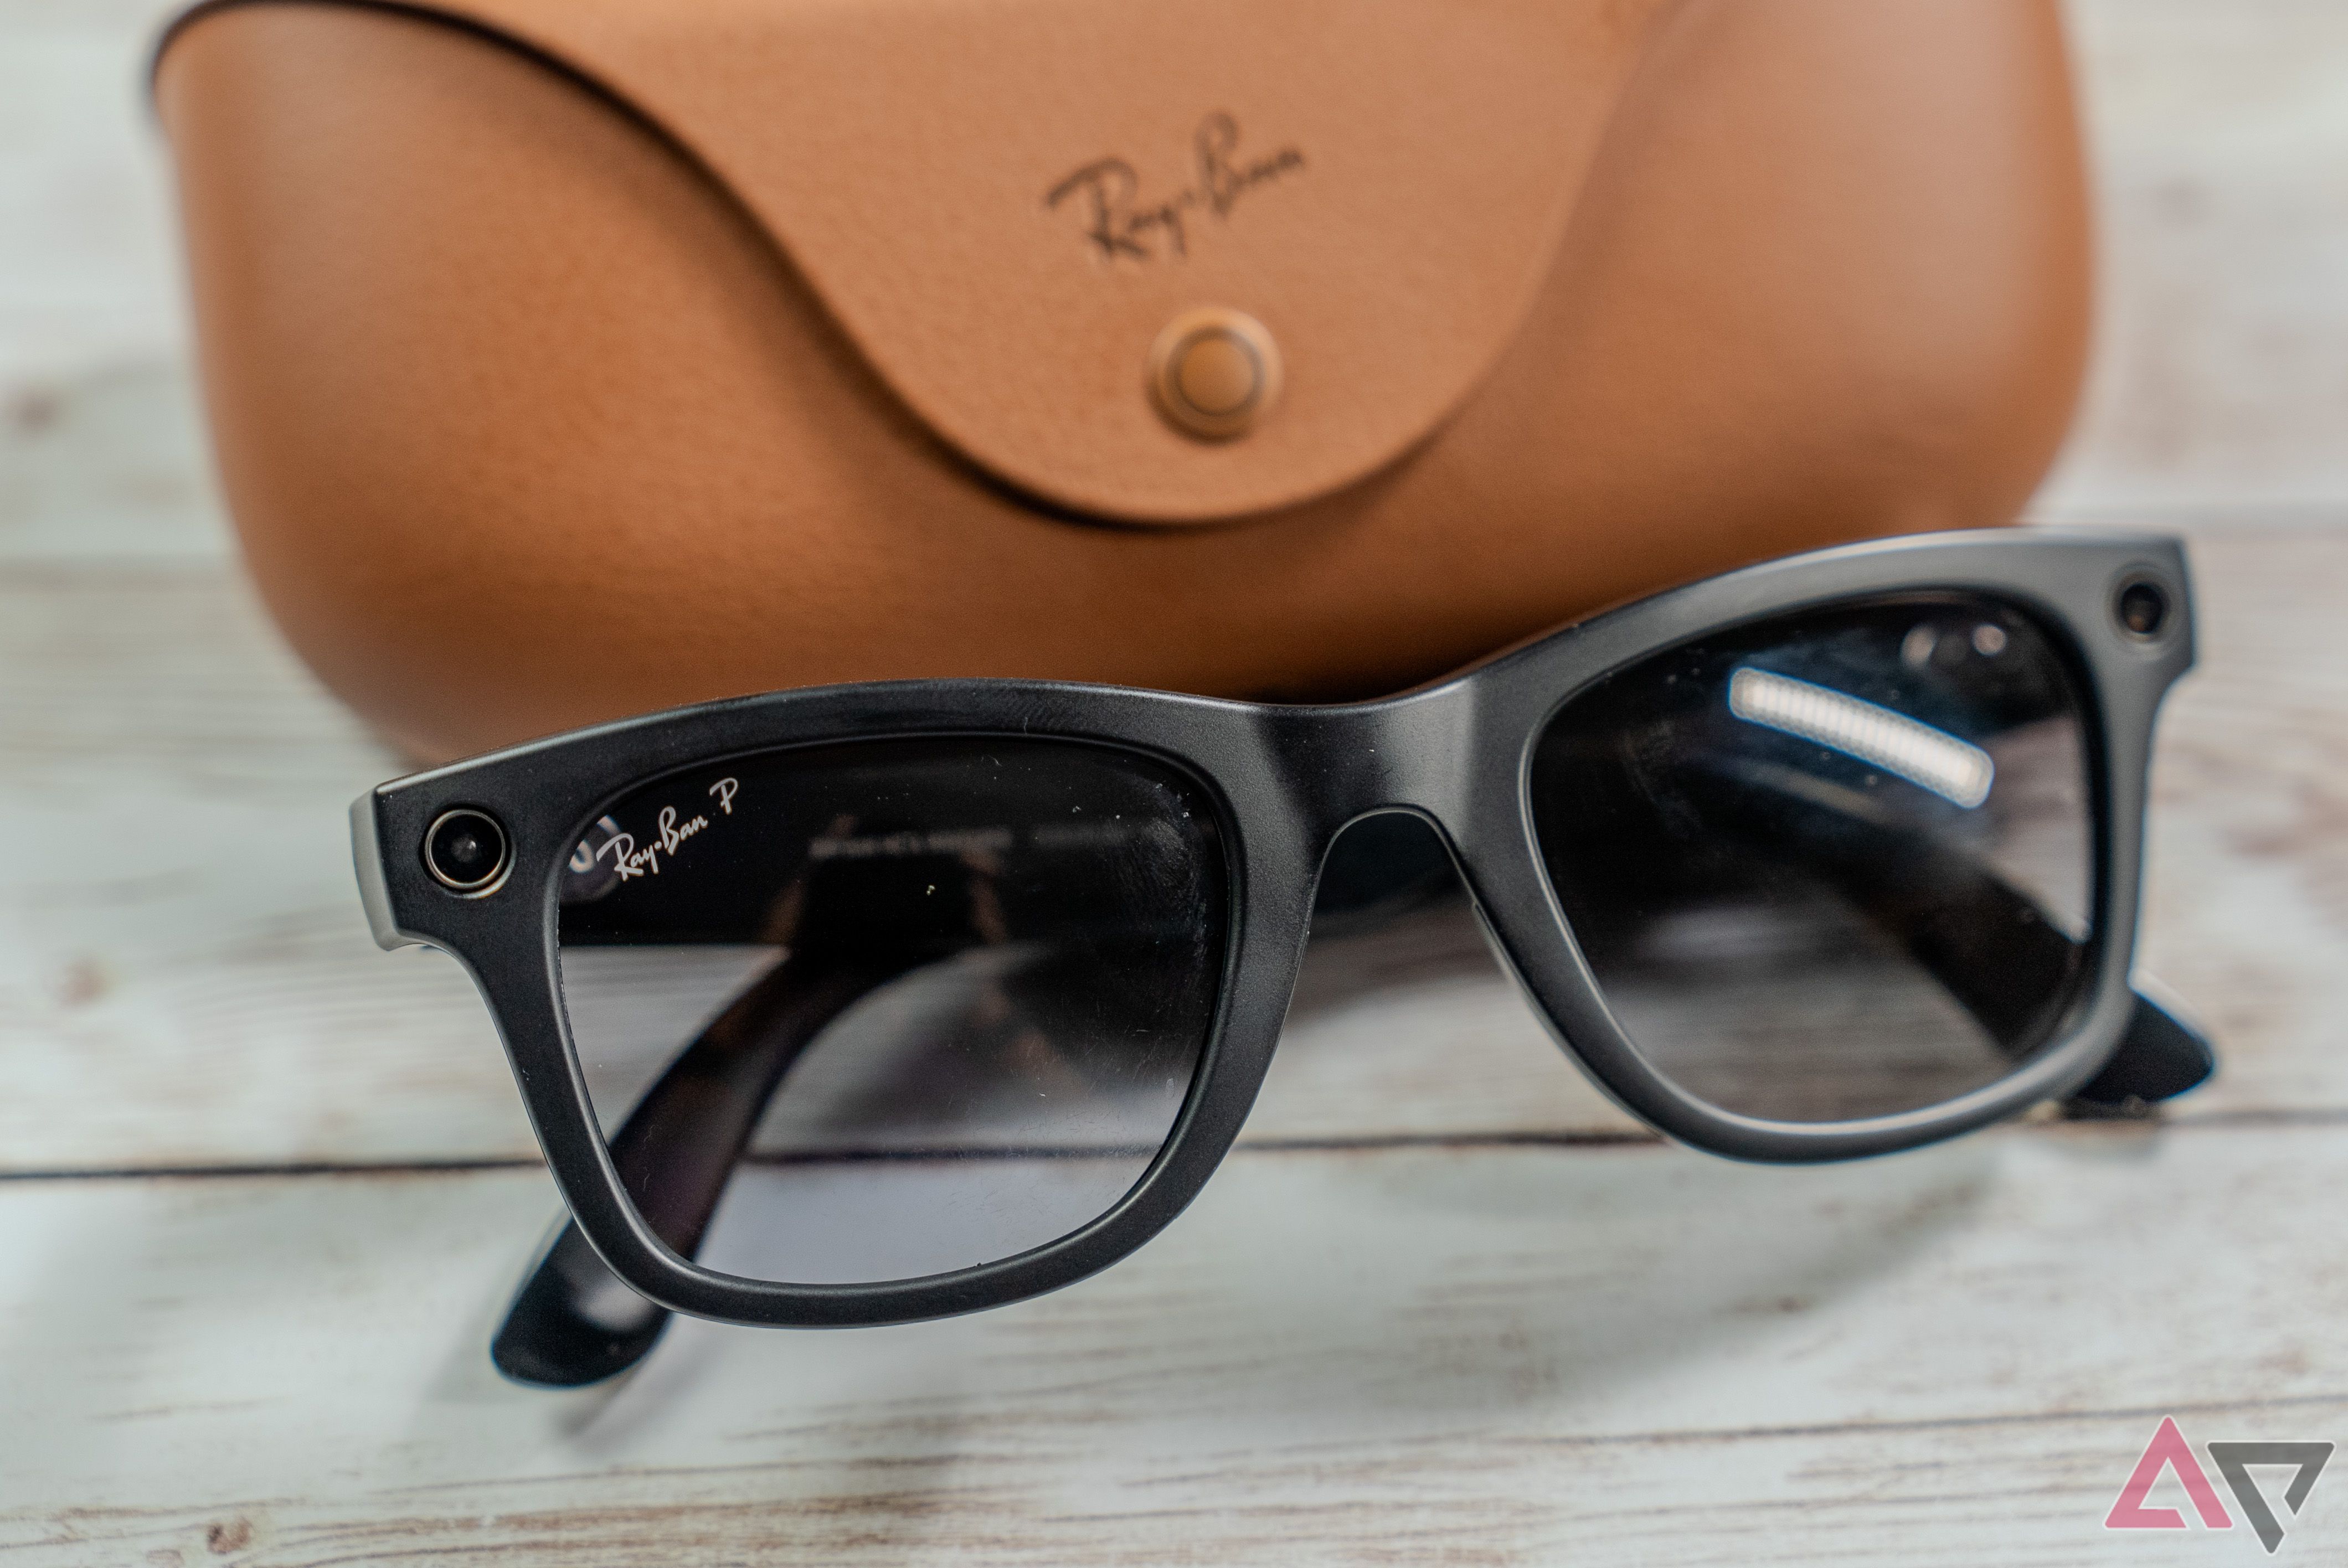 Ray-Ban Meta smart glasses review: Built for social creators